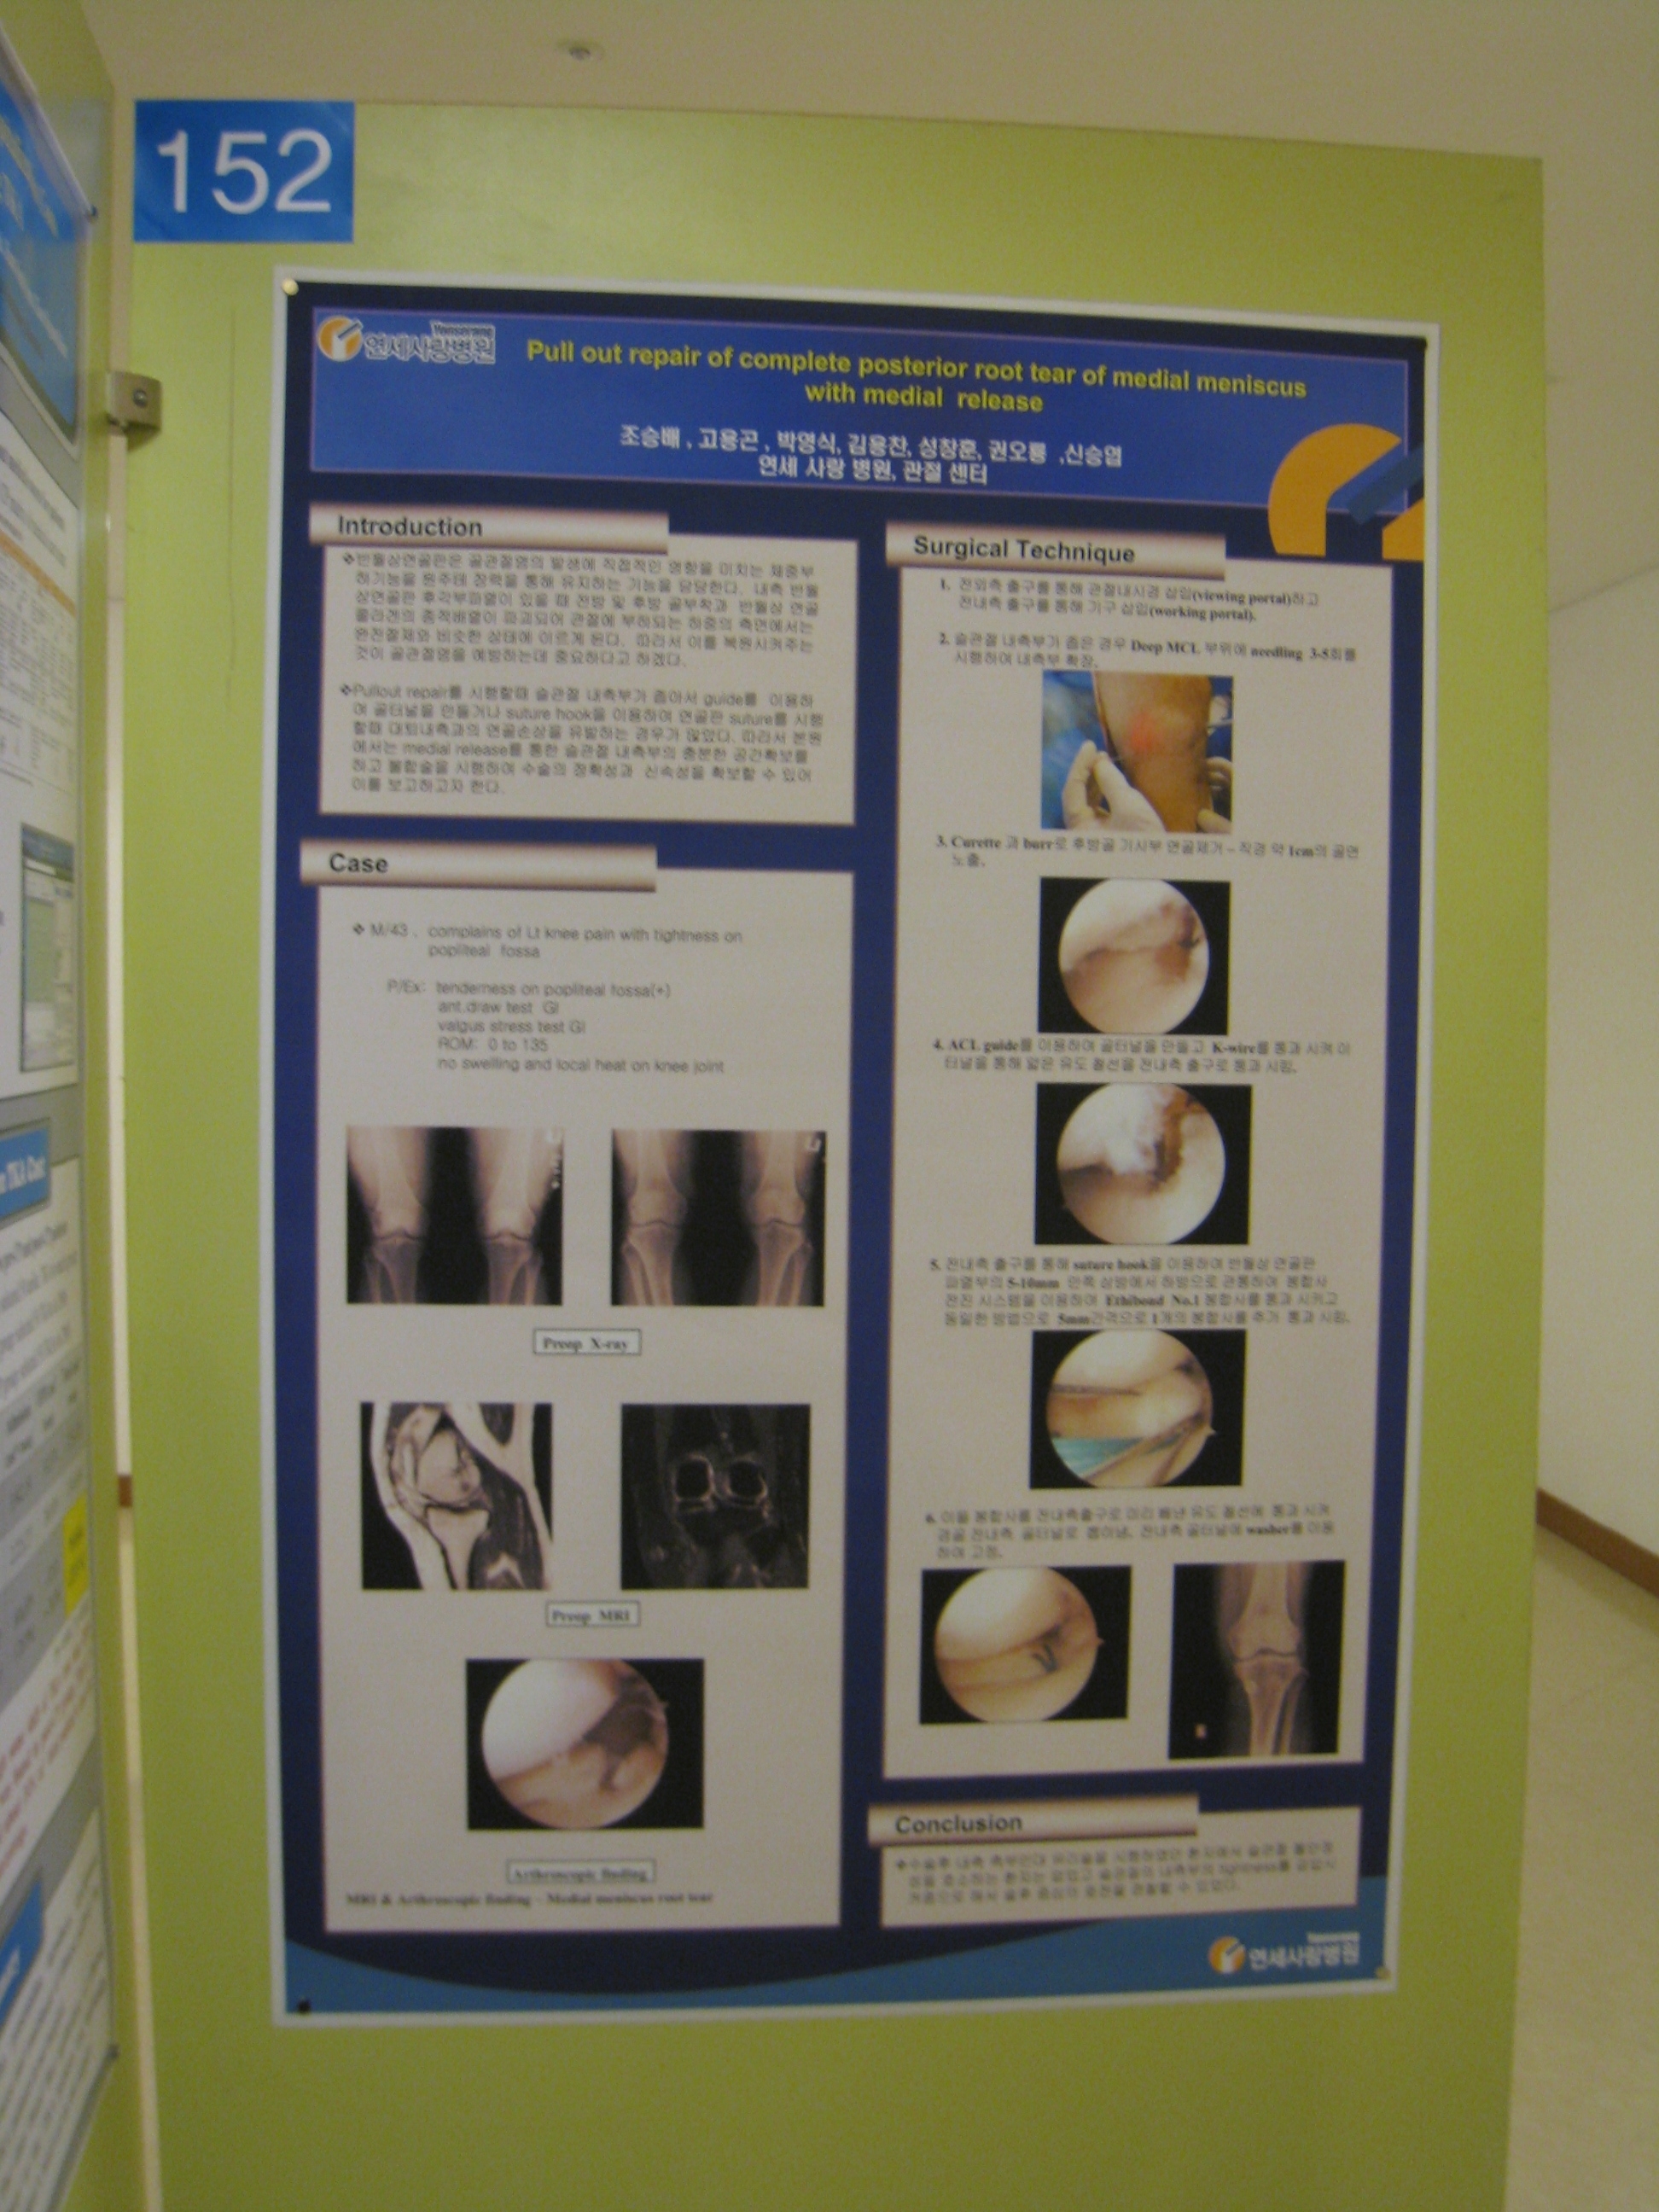 [2009 대한정형외과 학회 포스터] 내측측부 유리술을 이용한 내측 반월상 연골판 후각부 봉합술 게시글의 1번째 첨부파일입니다.